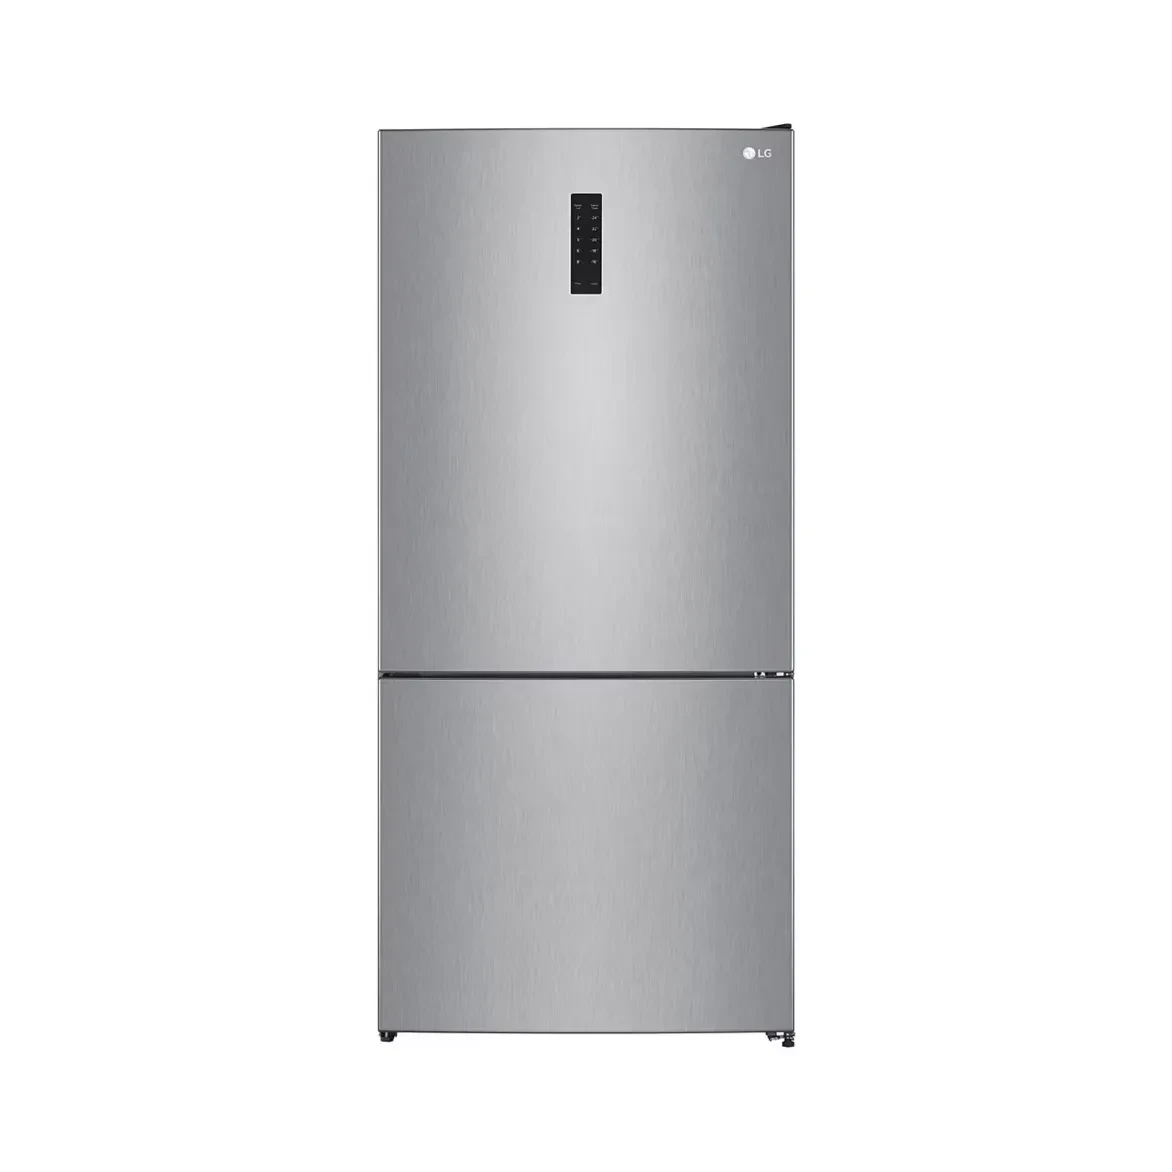 LG - Refrigerator (588 L (R:407L / F:181L)2 Side & Top , F: No-Turkey-LG Smart Inverter Compressor